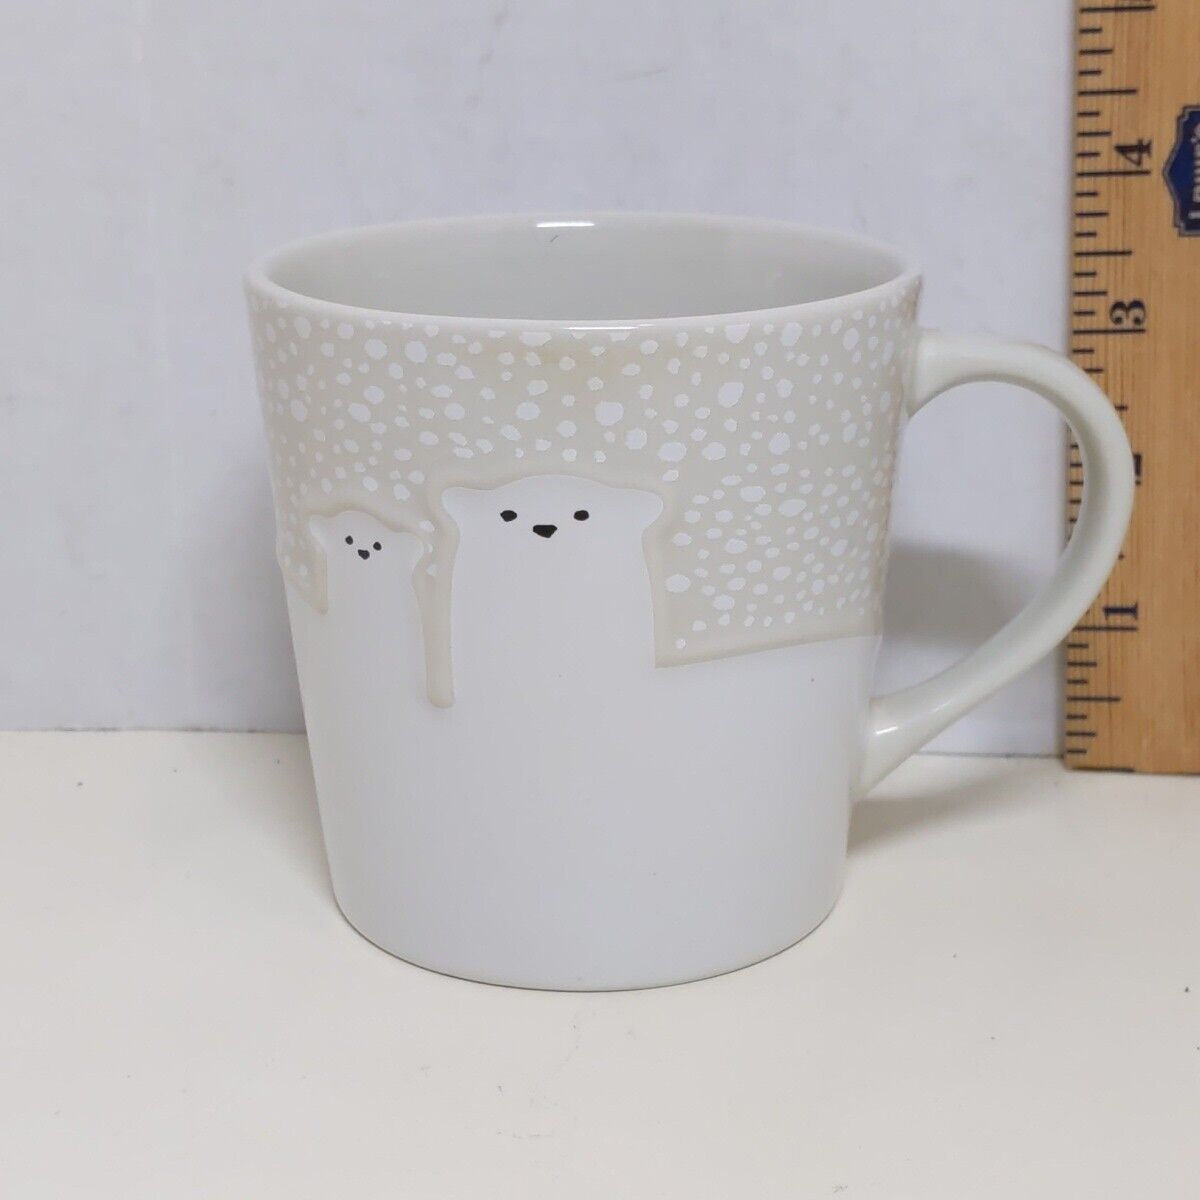 Starbucks Polar Bear Coffee Mug 12 Oz 2016 White Christmas Holiday Cup